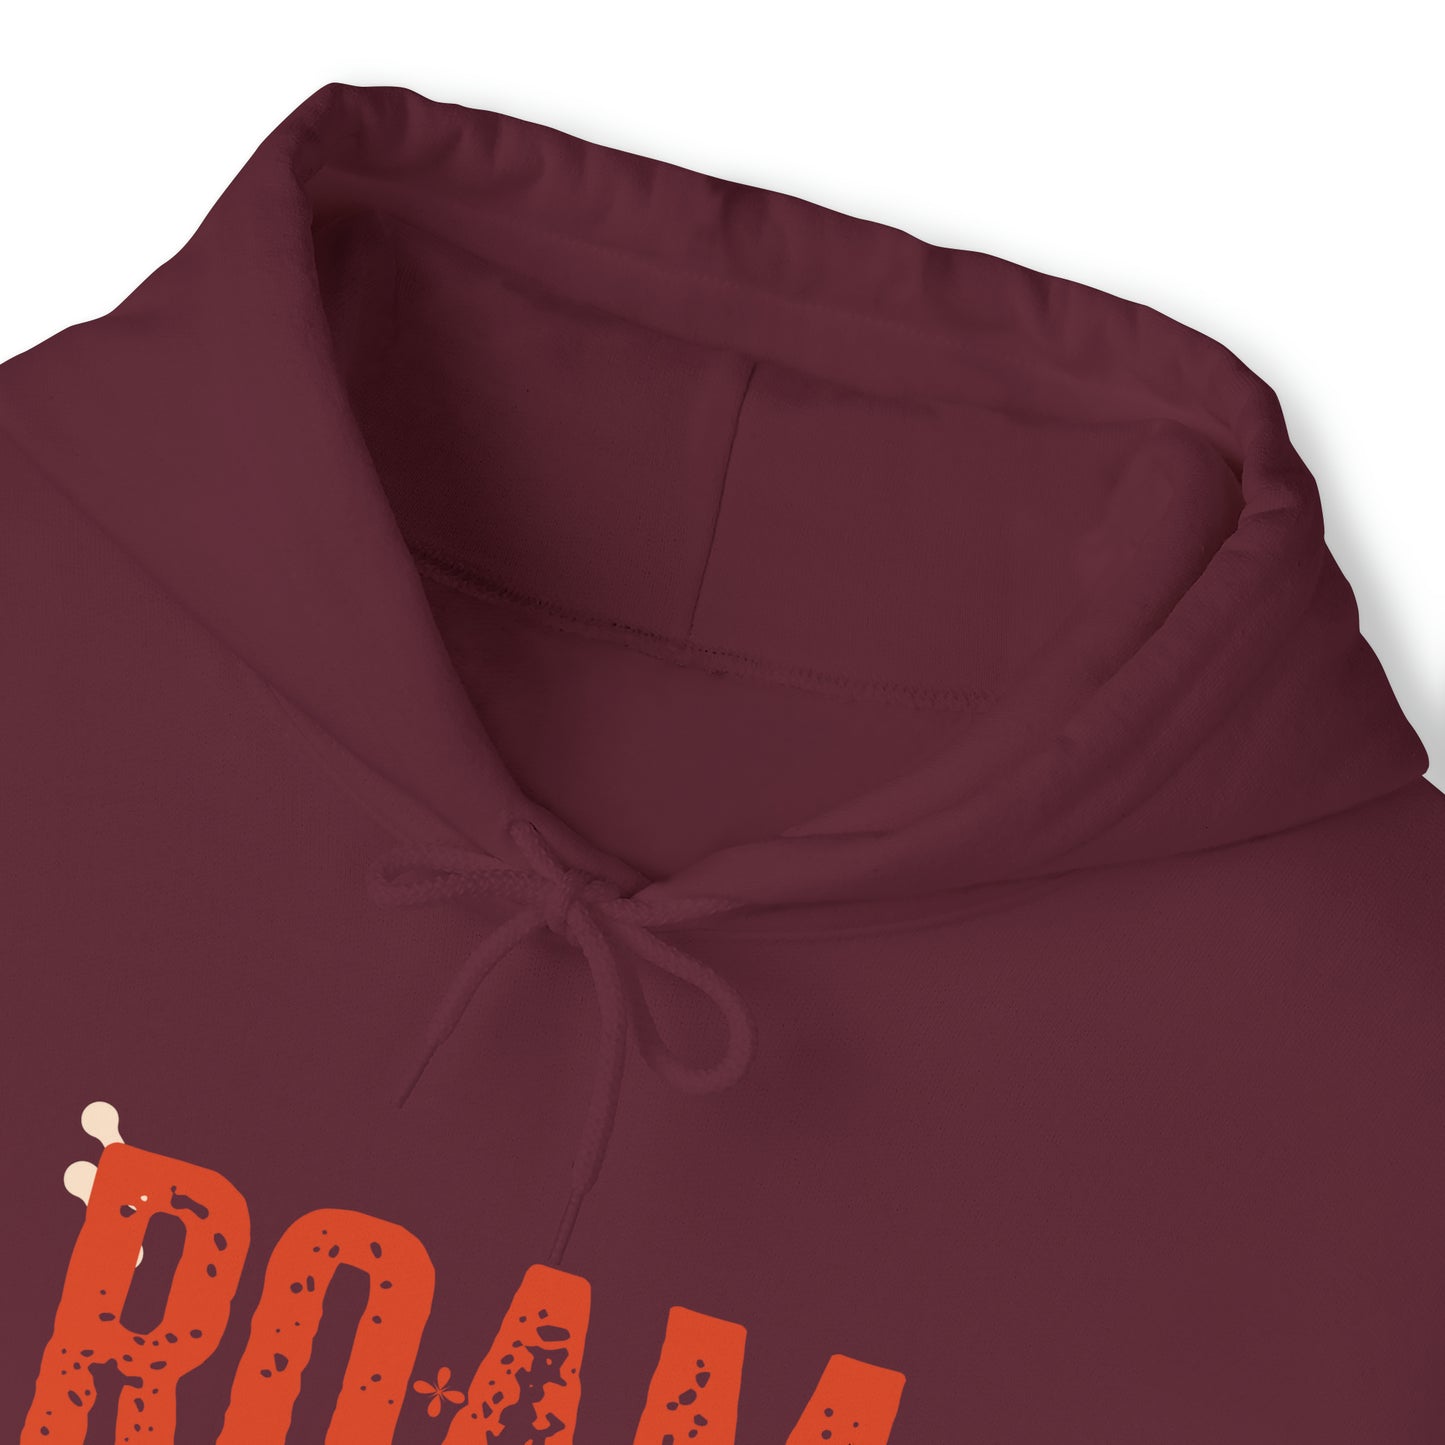 Roam Free || Unisex Heavy Blend™ Hooded Sweatshirt